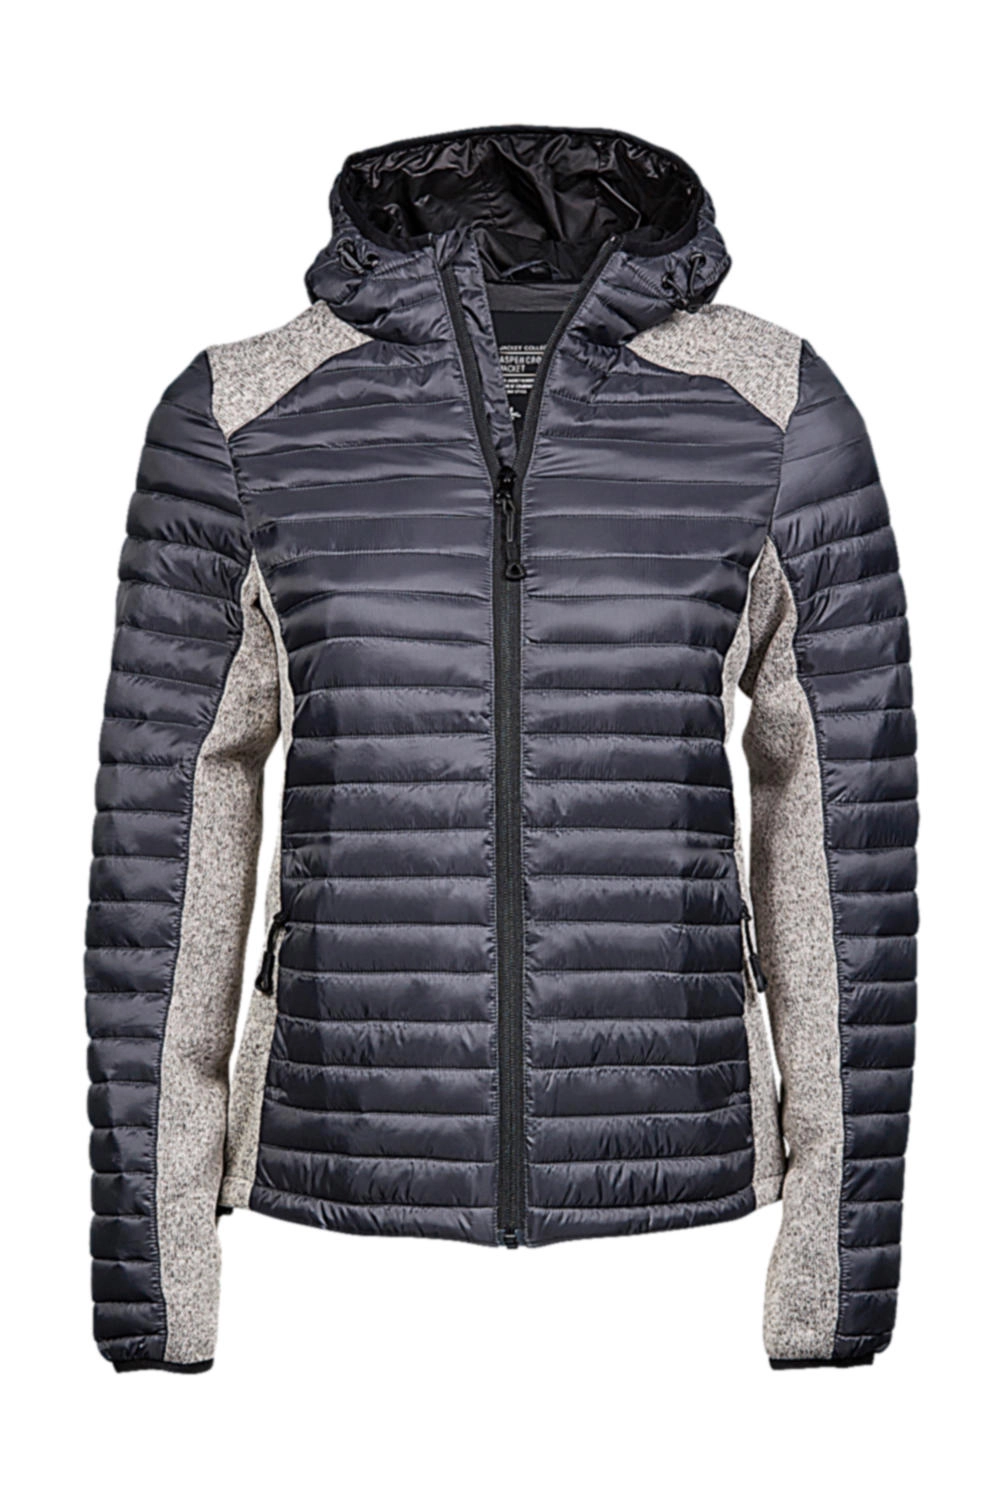 Ladies` Hooded Outdoor Crossover Jacket zum Besticken und Bedrucken in der Farbe Space Grey/Grey Melange mit Ihren Logo, Schriftzug oder Motiv.